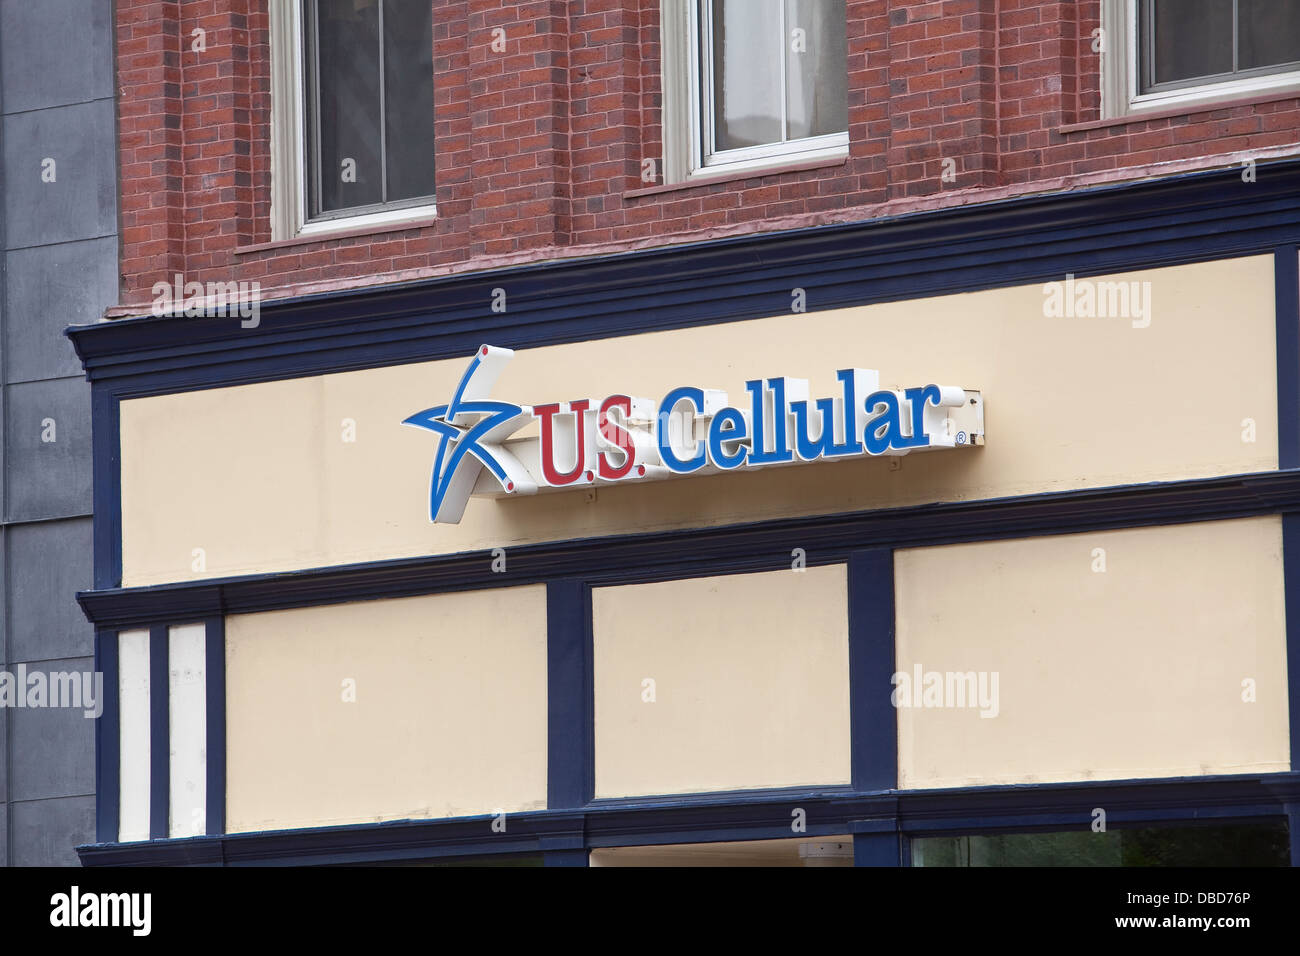 Un U.S. Cellular store est photographié à Portland, Maine Banque D'Images